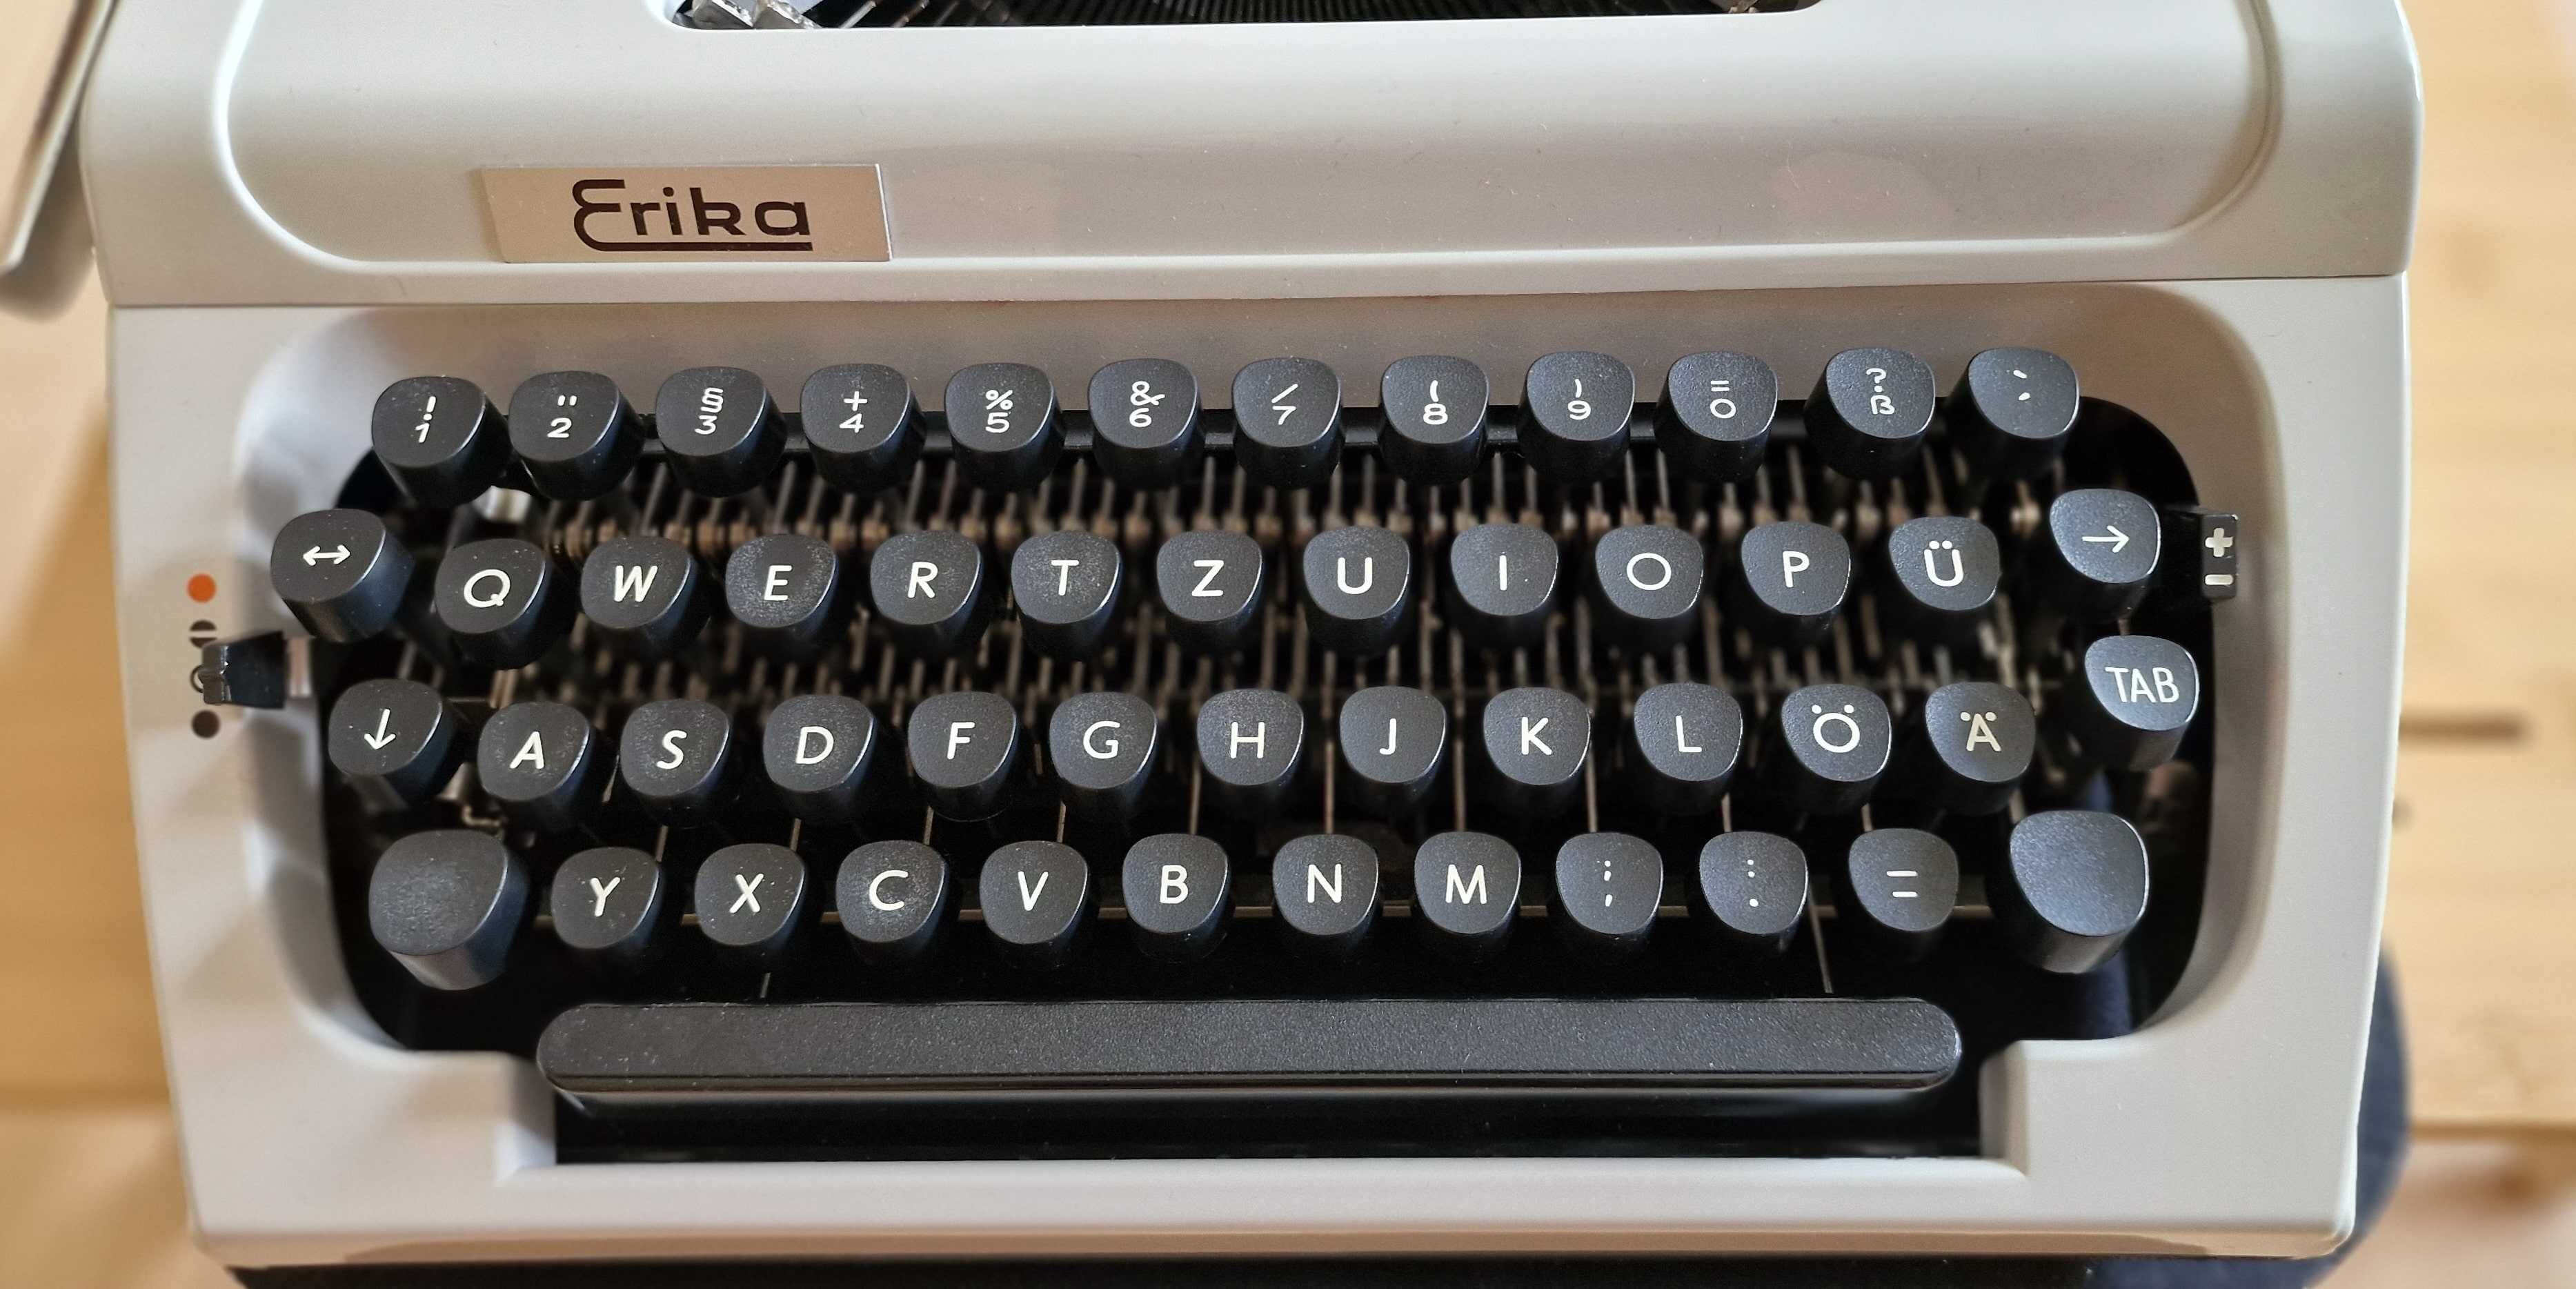 Maszyna do pisania ERIKA, model 155, w bardzo dobrym stanie.